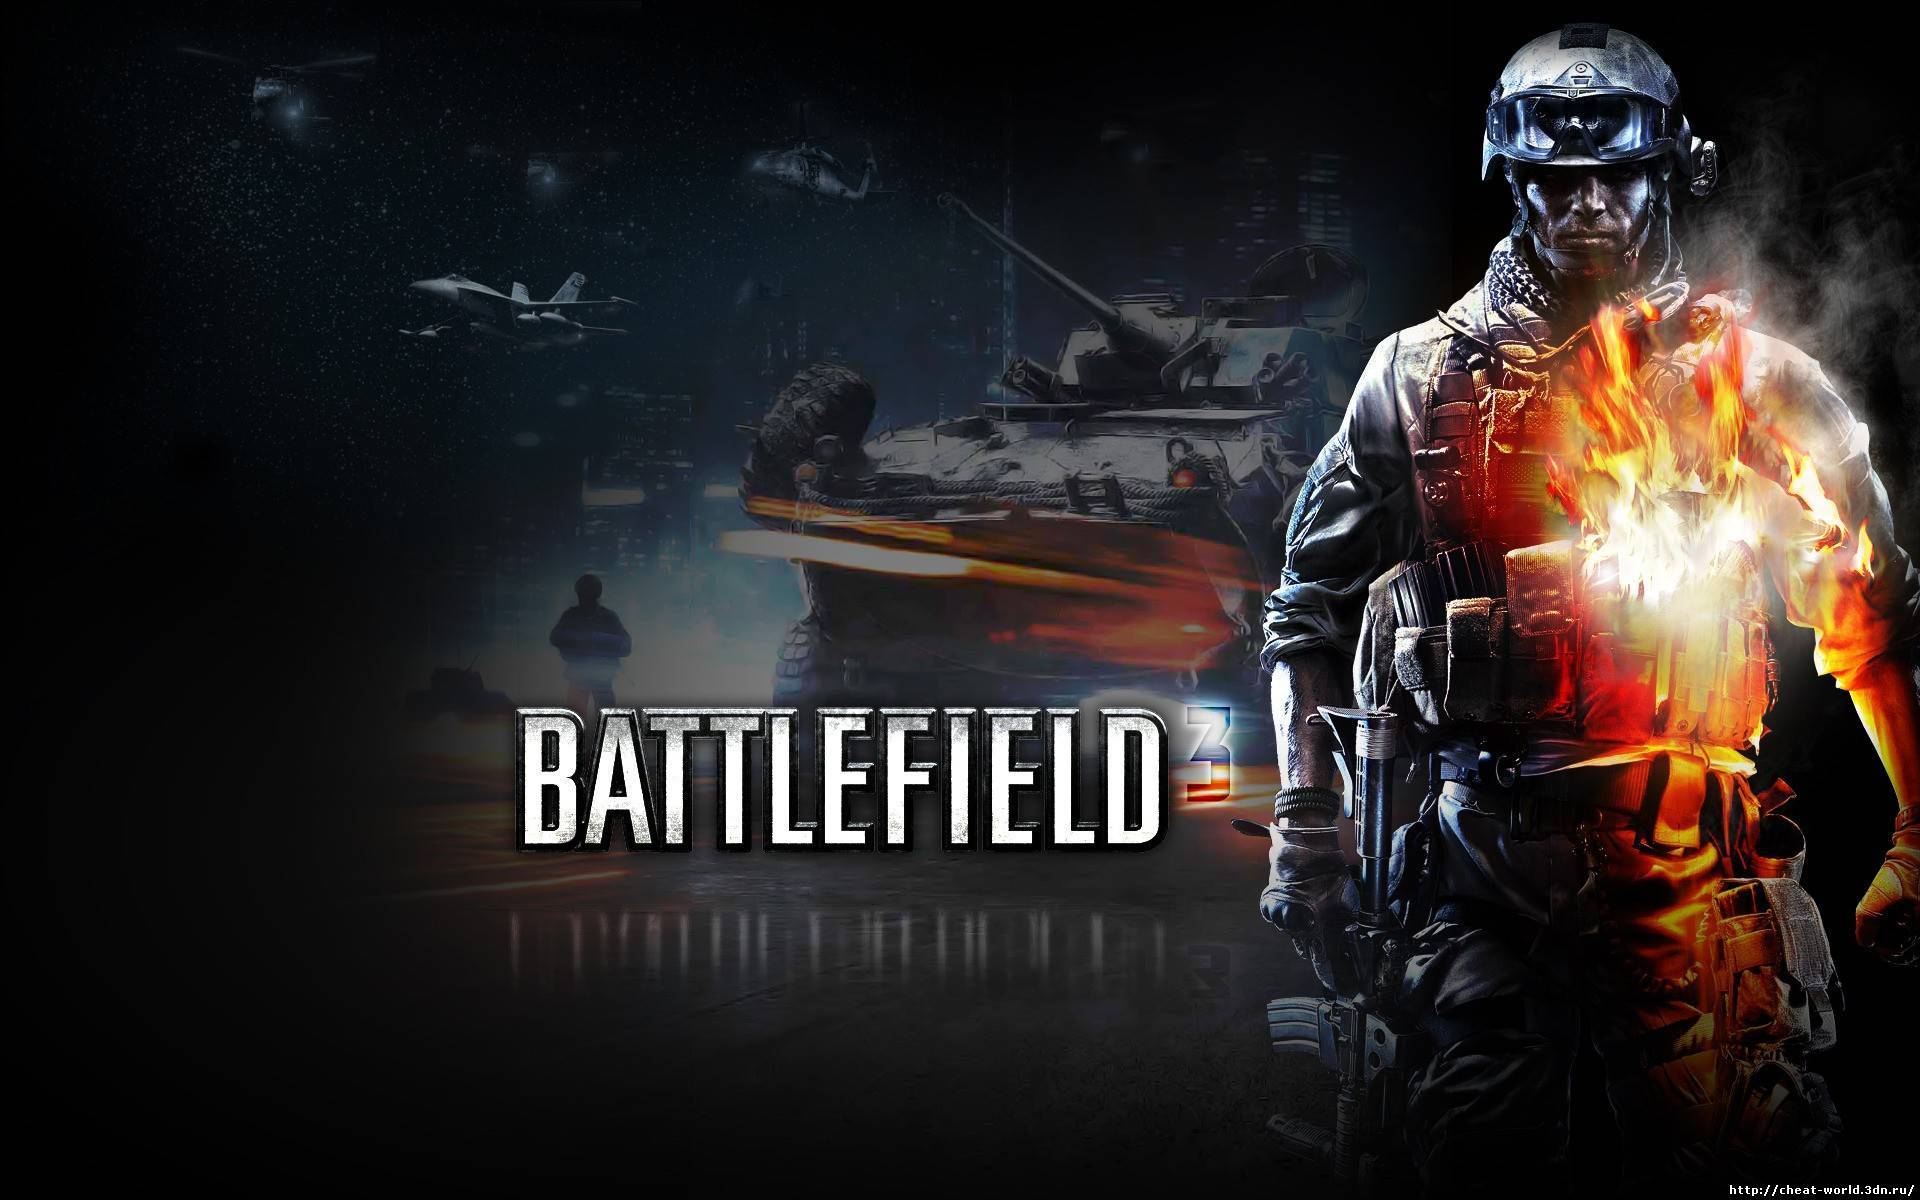  Чит для Battlefield 3 бесплатно Crosshair 